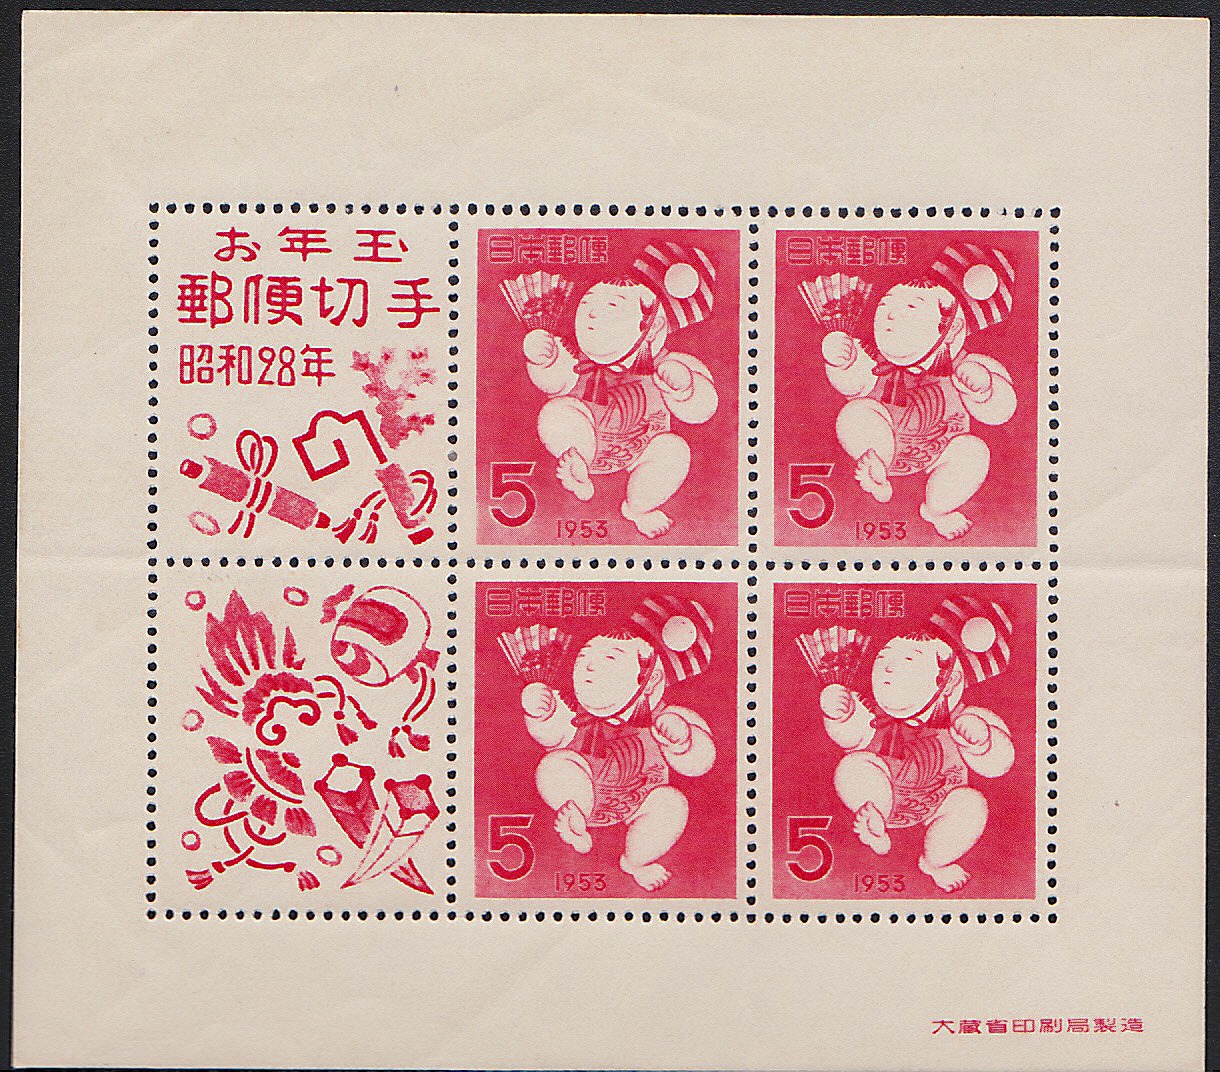 年賀 昭和28年御年玉郵便切手 (裏に紙の貼り付きと薄紙剥がれあり 